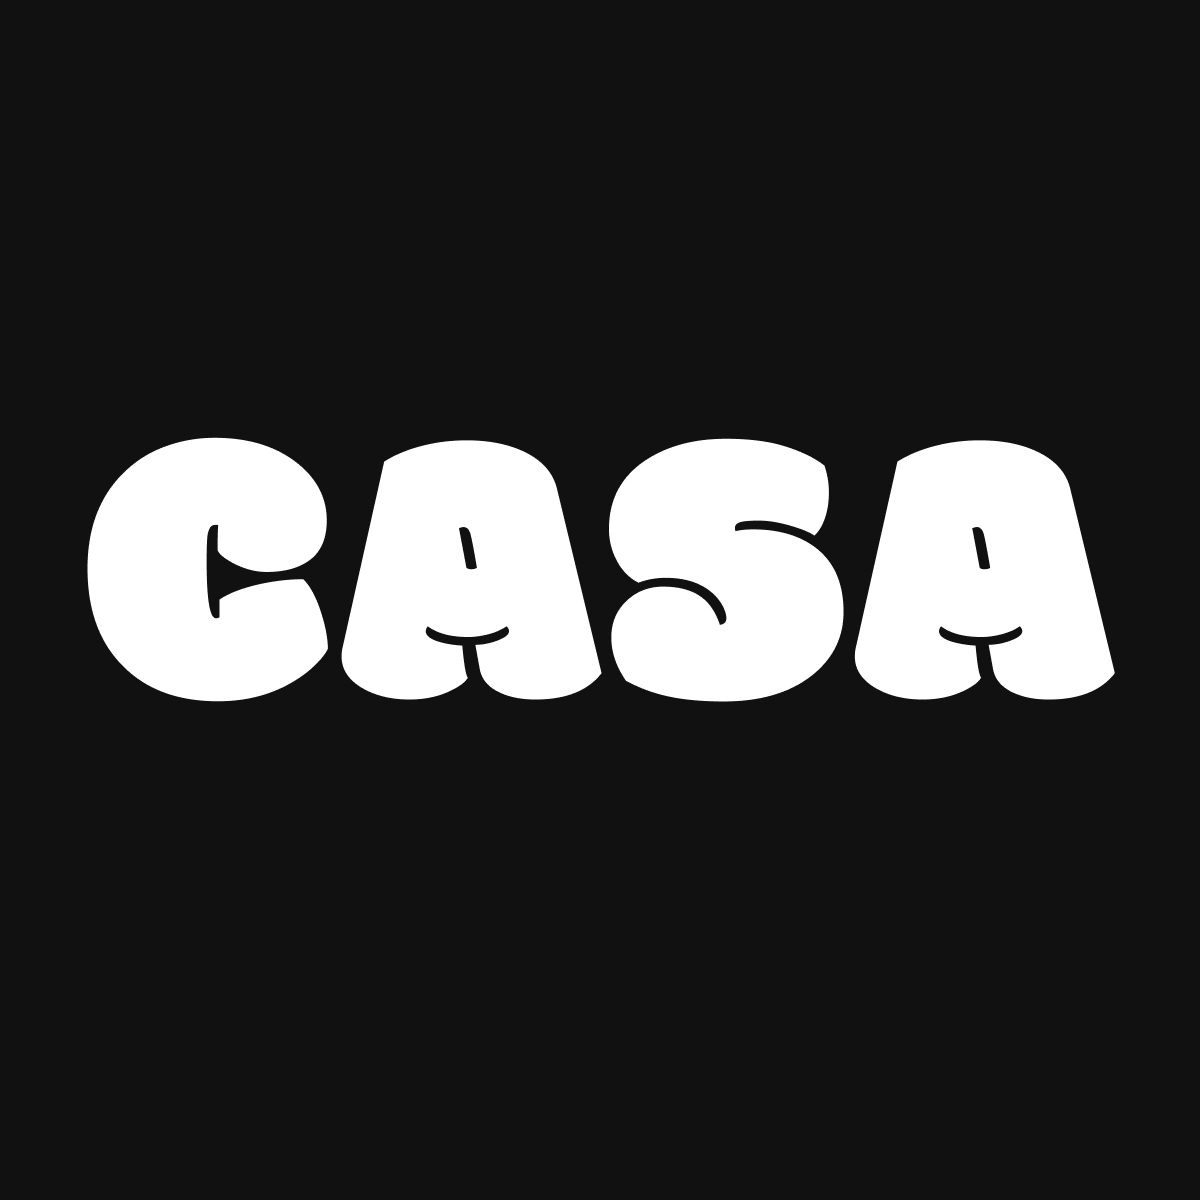 Casa: Google Feed & Subscription App